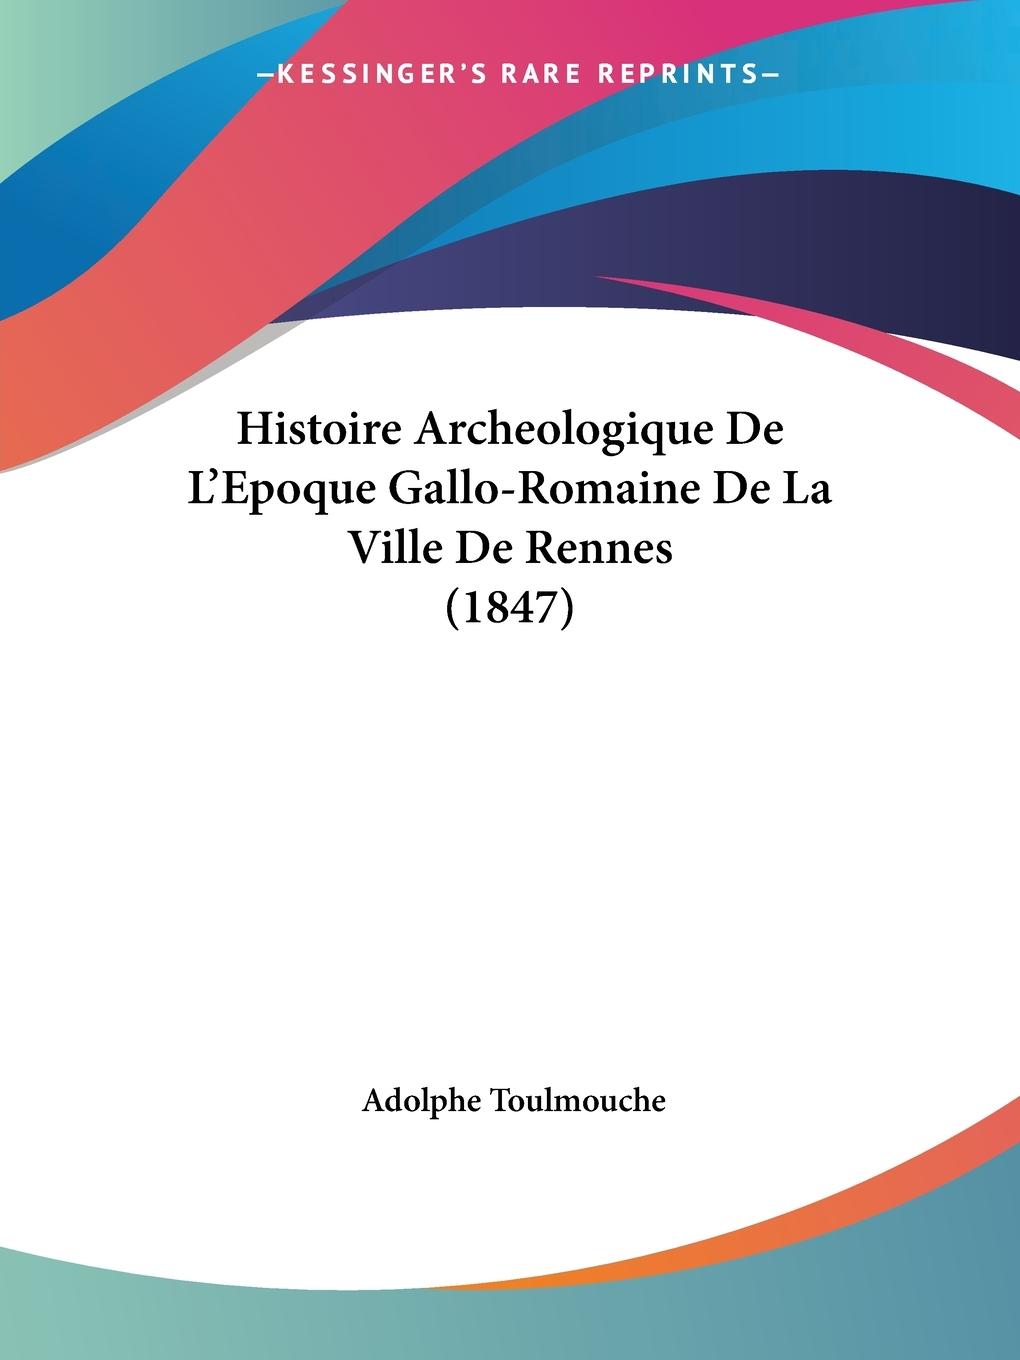 Histoire Archeologique De L Epoque Gallo-Romaine De La Ville De Rennes (1847) - Toulmouche, Adolphe